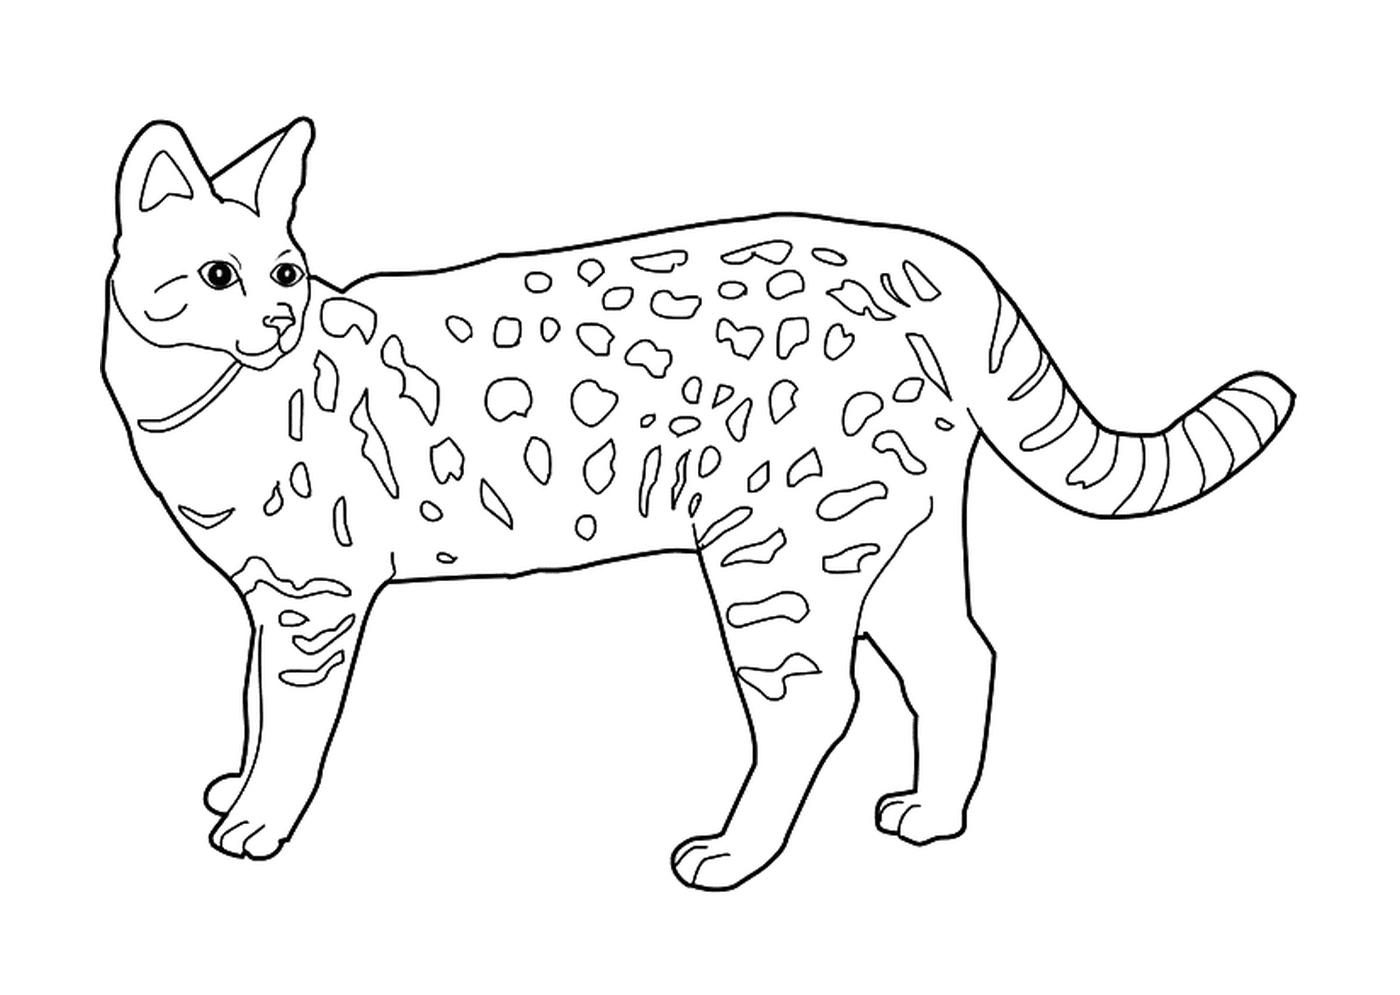  Savannah, um gato selvagem domesticado 